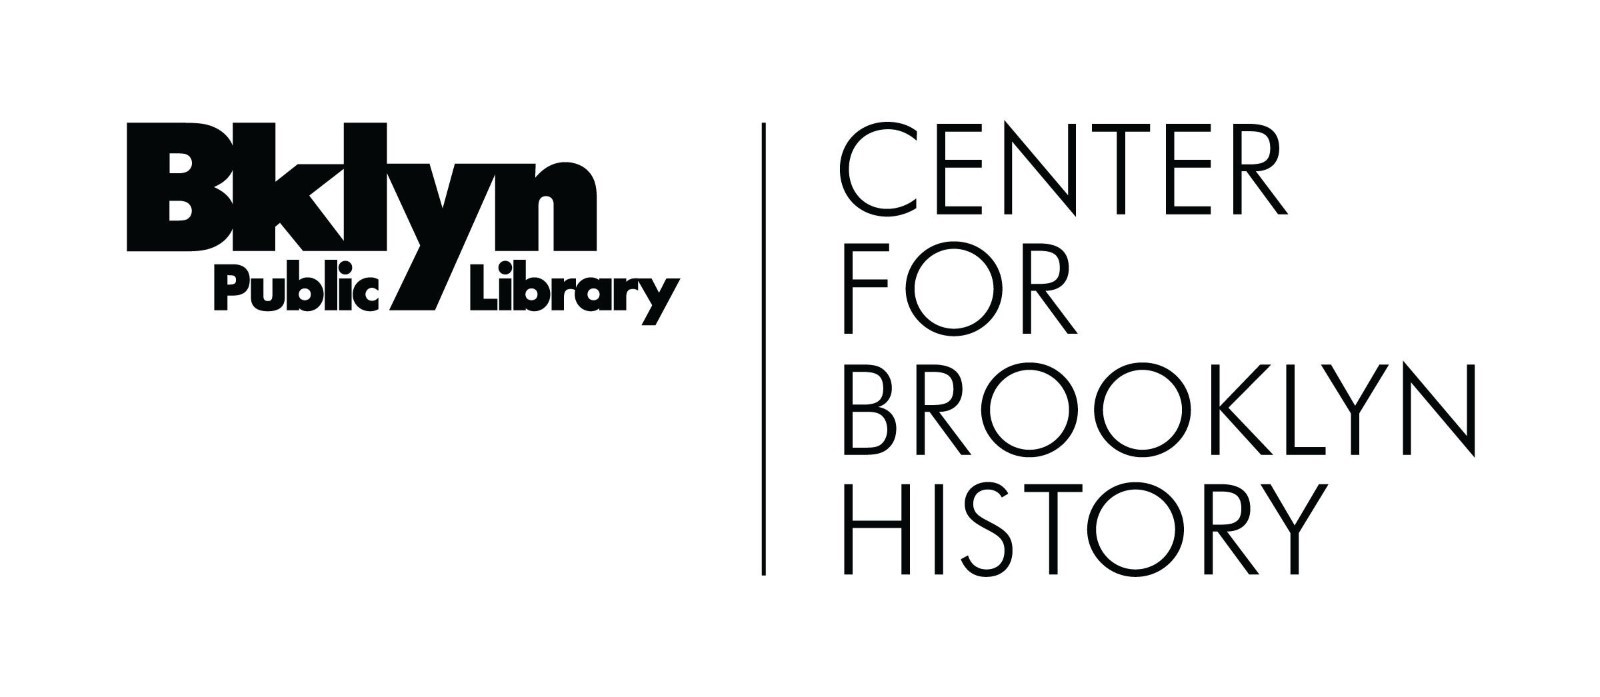 ブルックリン公共図書館、ブルックリン歴史センター。